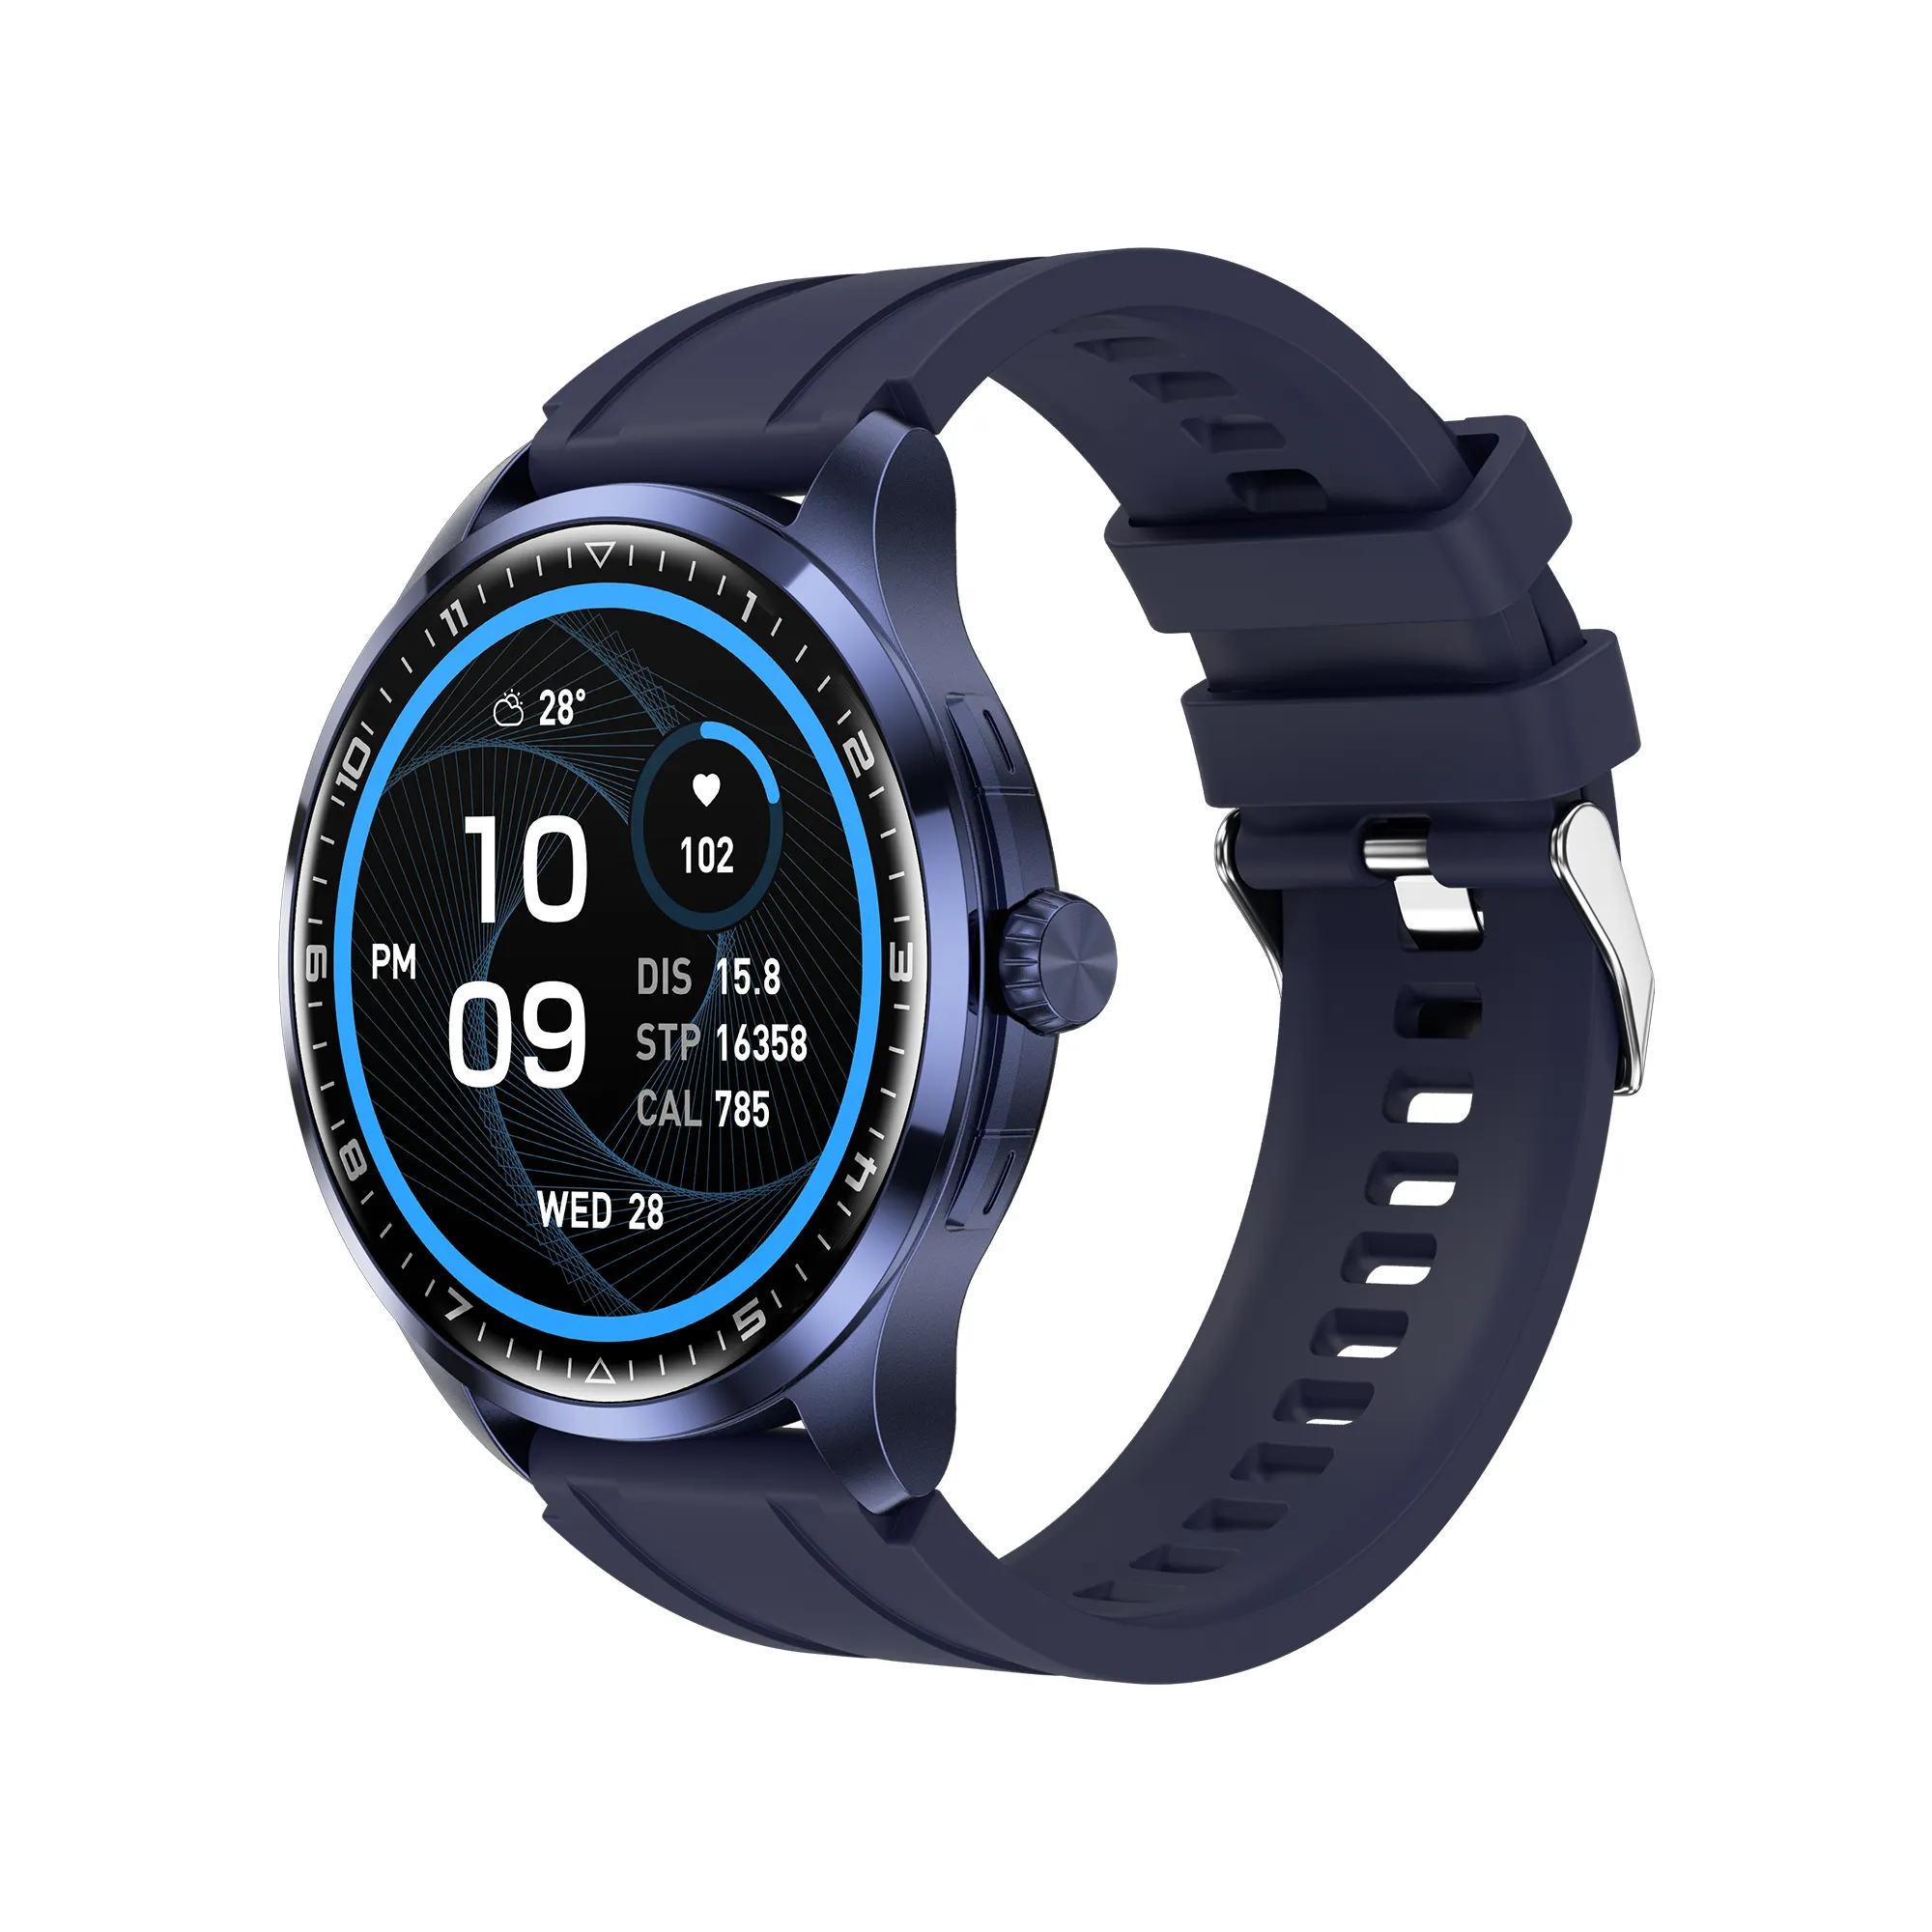 Erkek yeni su geçirmez Android kalp hızı spor akıllı saat Symbian Fitness Tracker Band bilezikler moda akıllı saat es